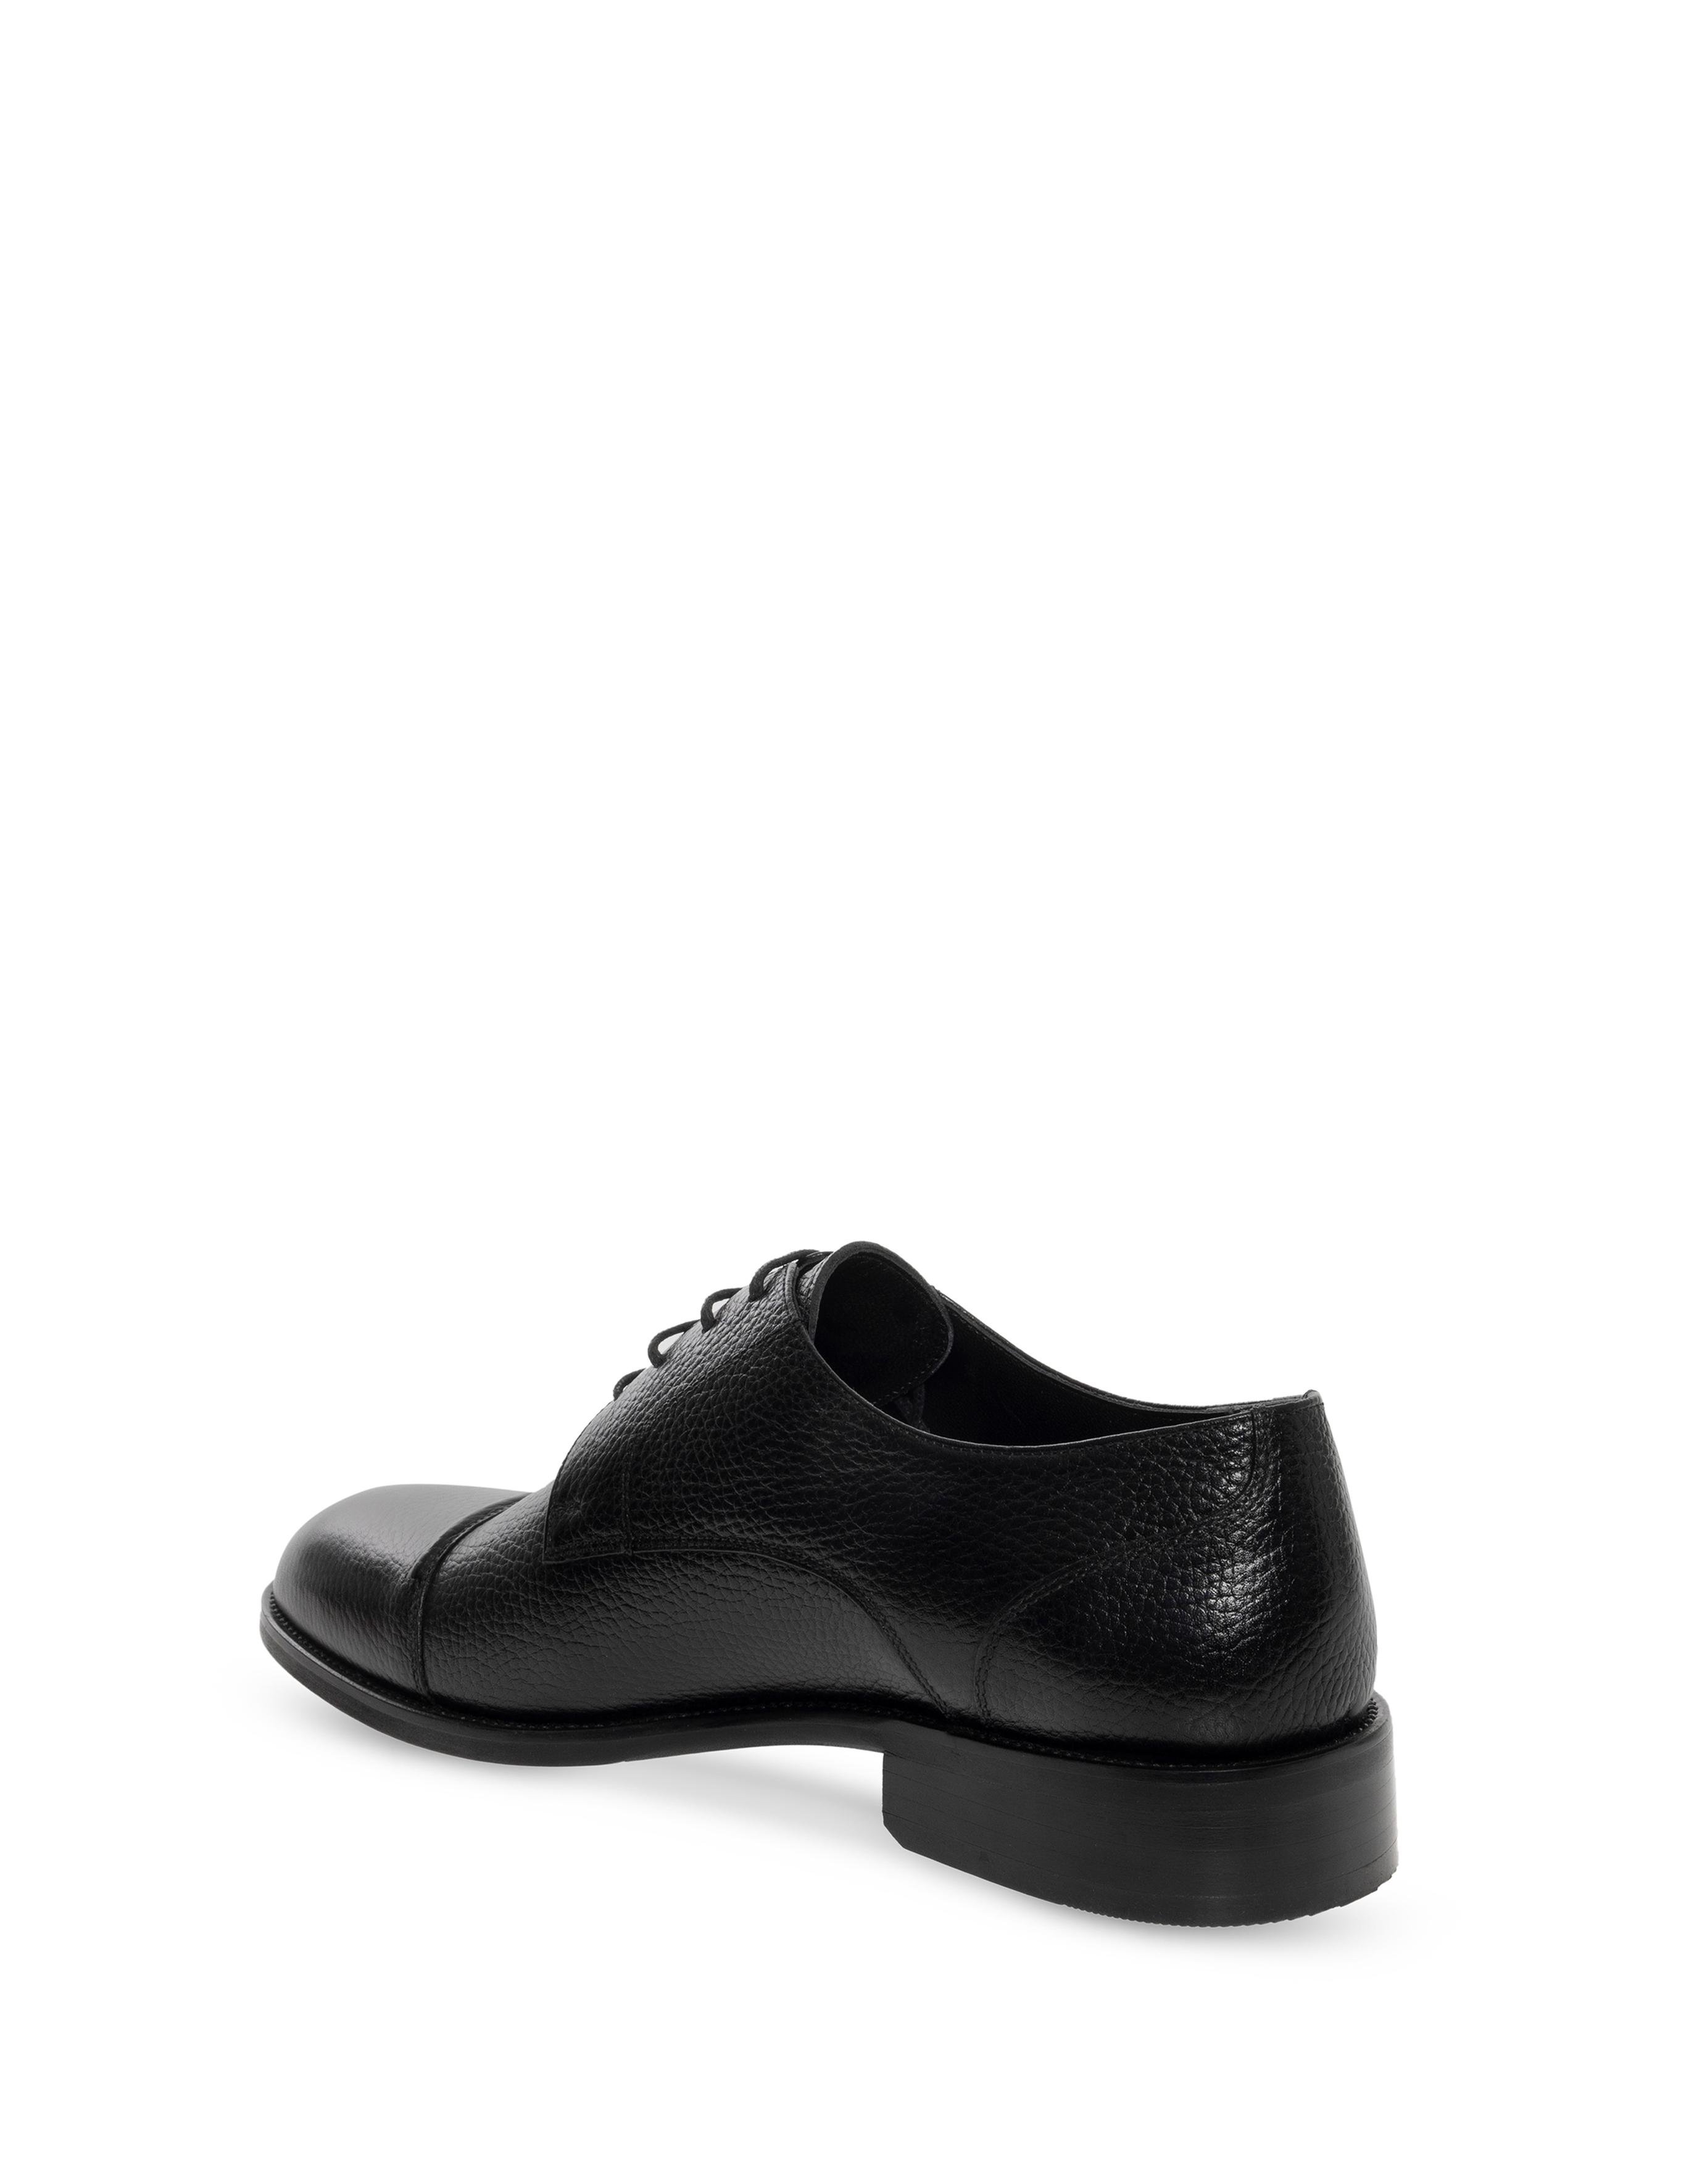 Siyah Klasik Ayakkabı - 50276615031